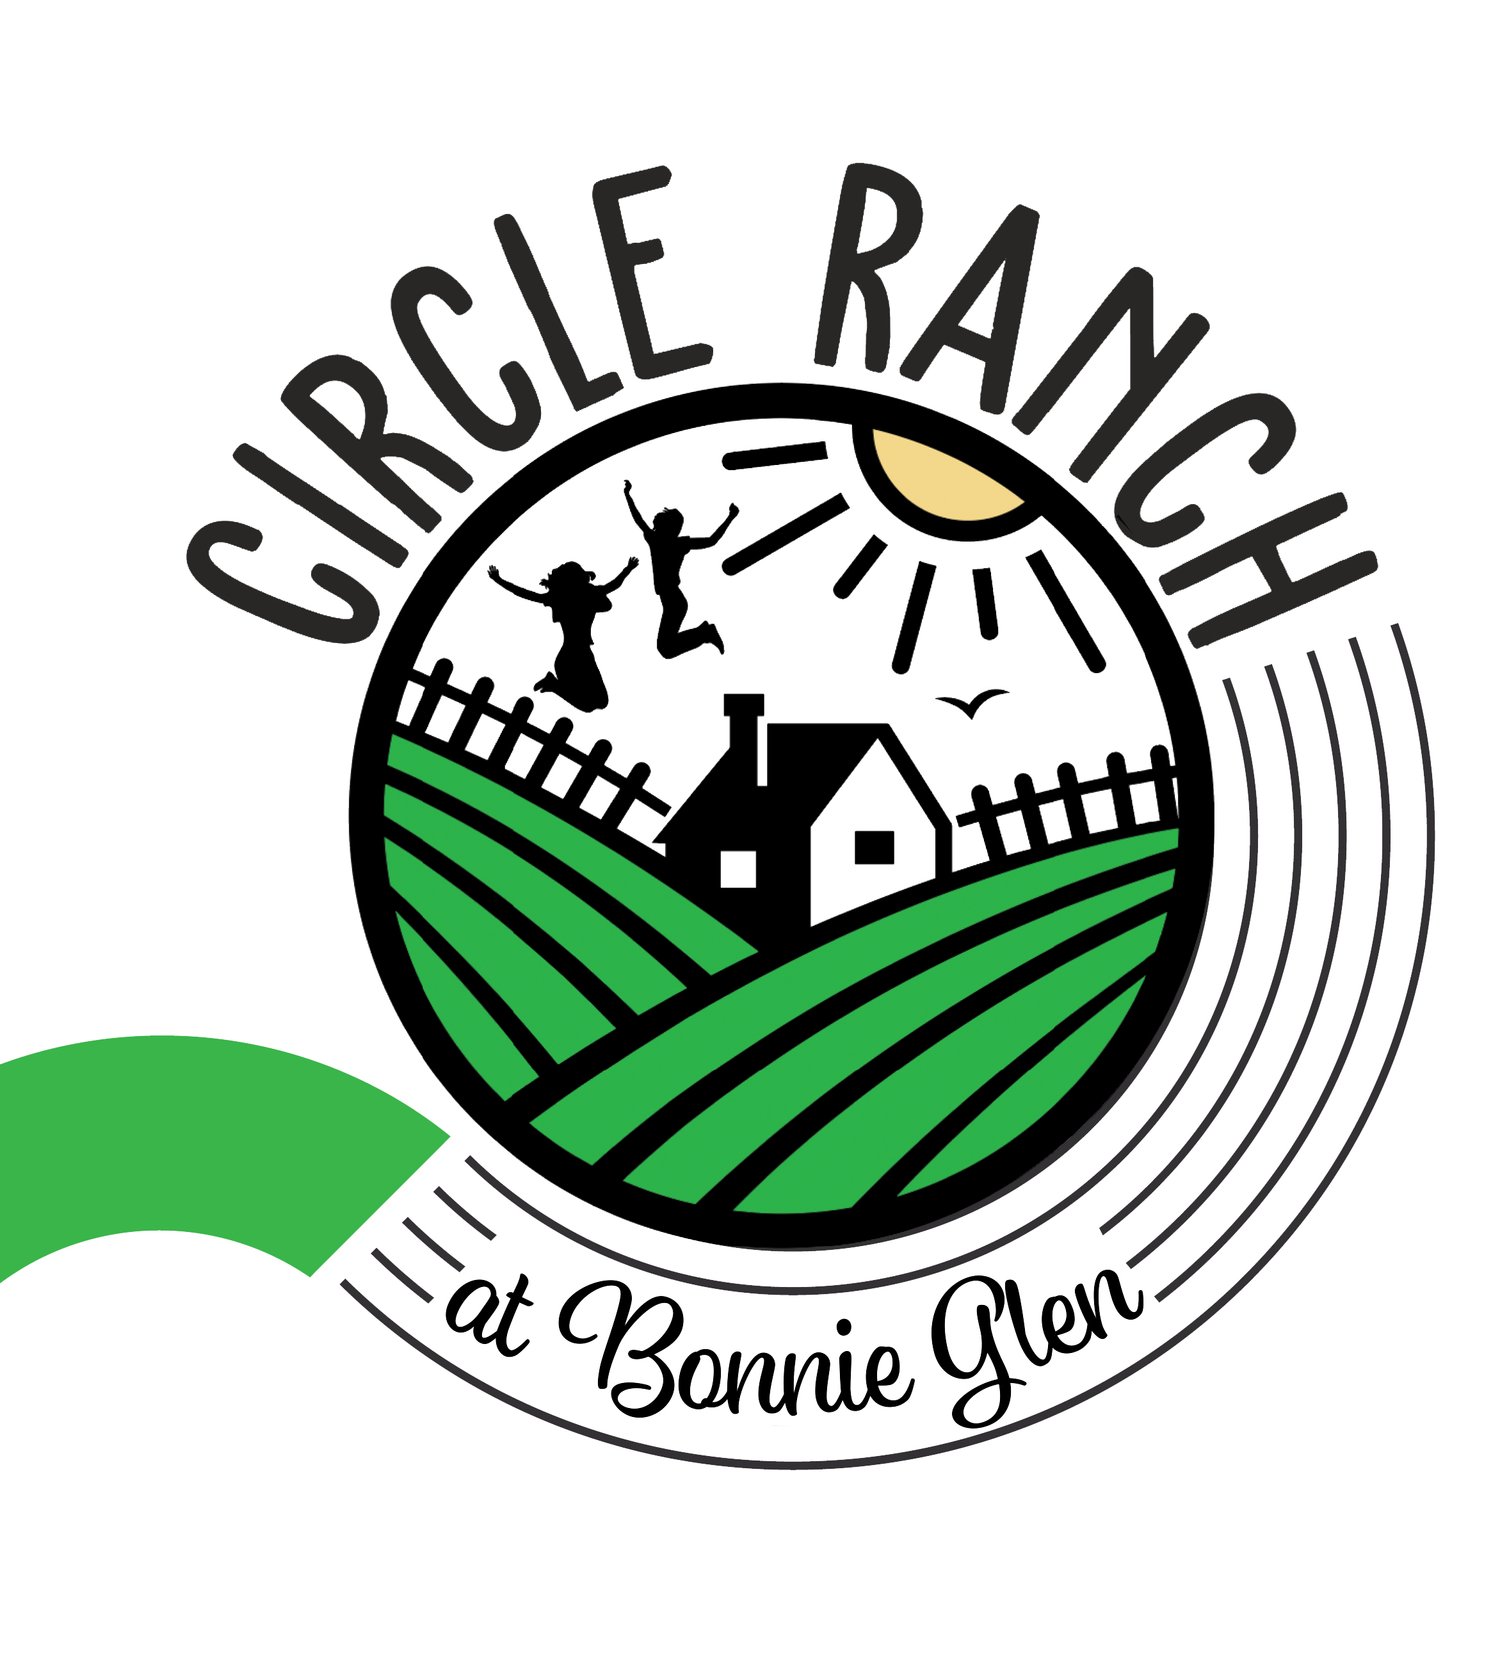 Circle Ranch